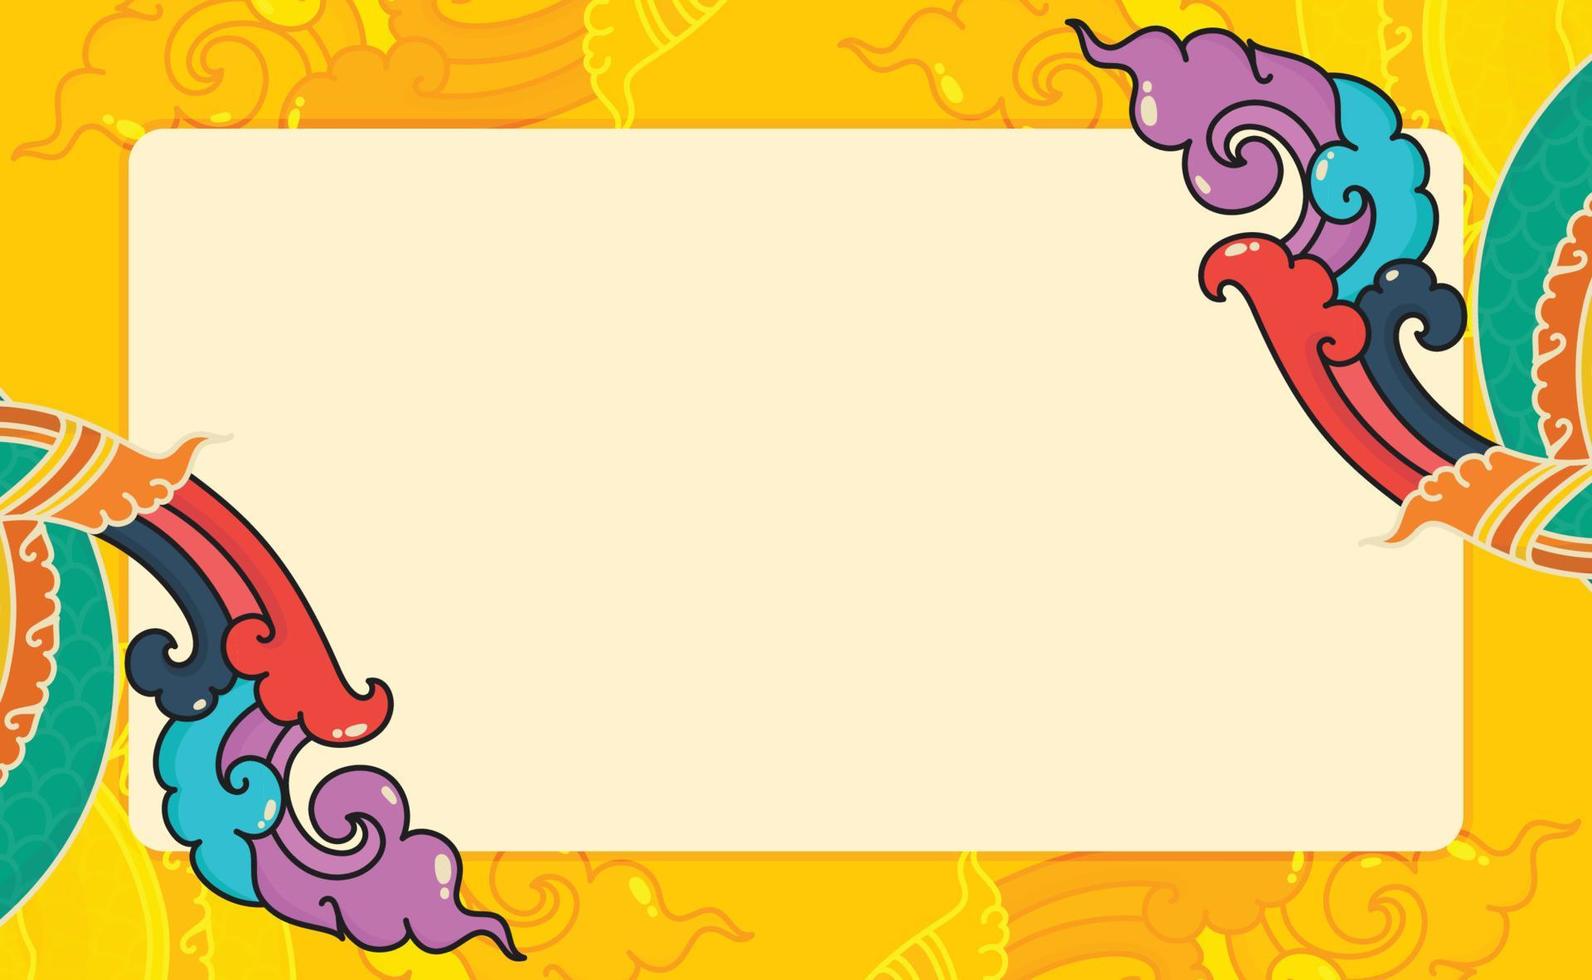 staart van de thailand slang kleur volledige kawaii doodle platte cartoon vector illustratie grens frame sjabloon